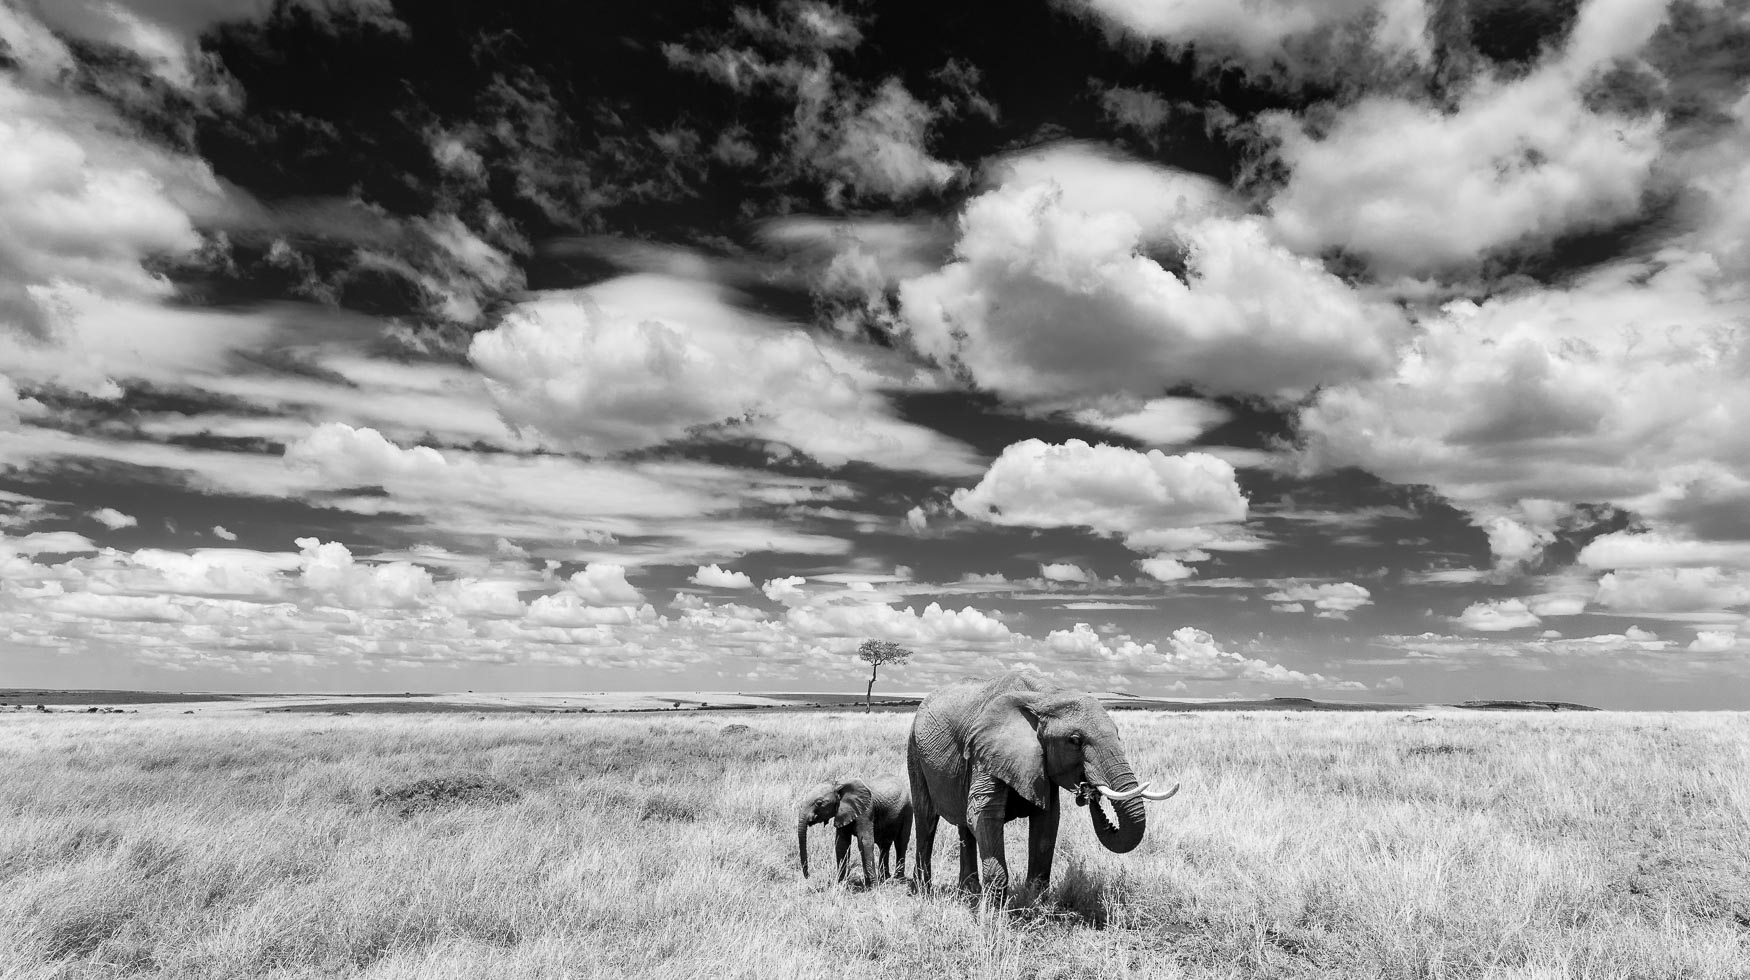 The Mara Triangle Elephant and big sky